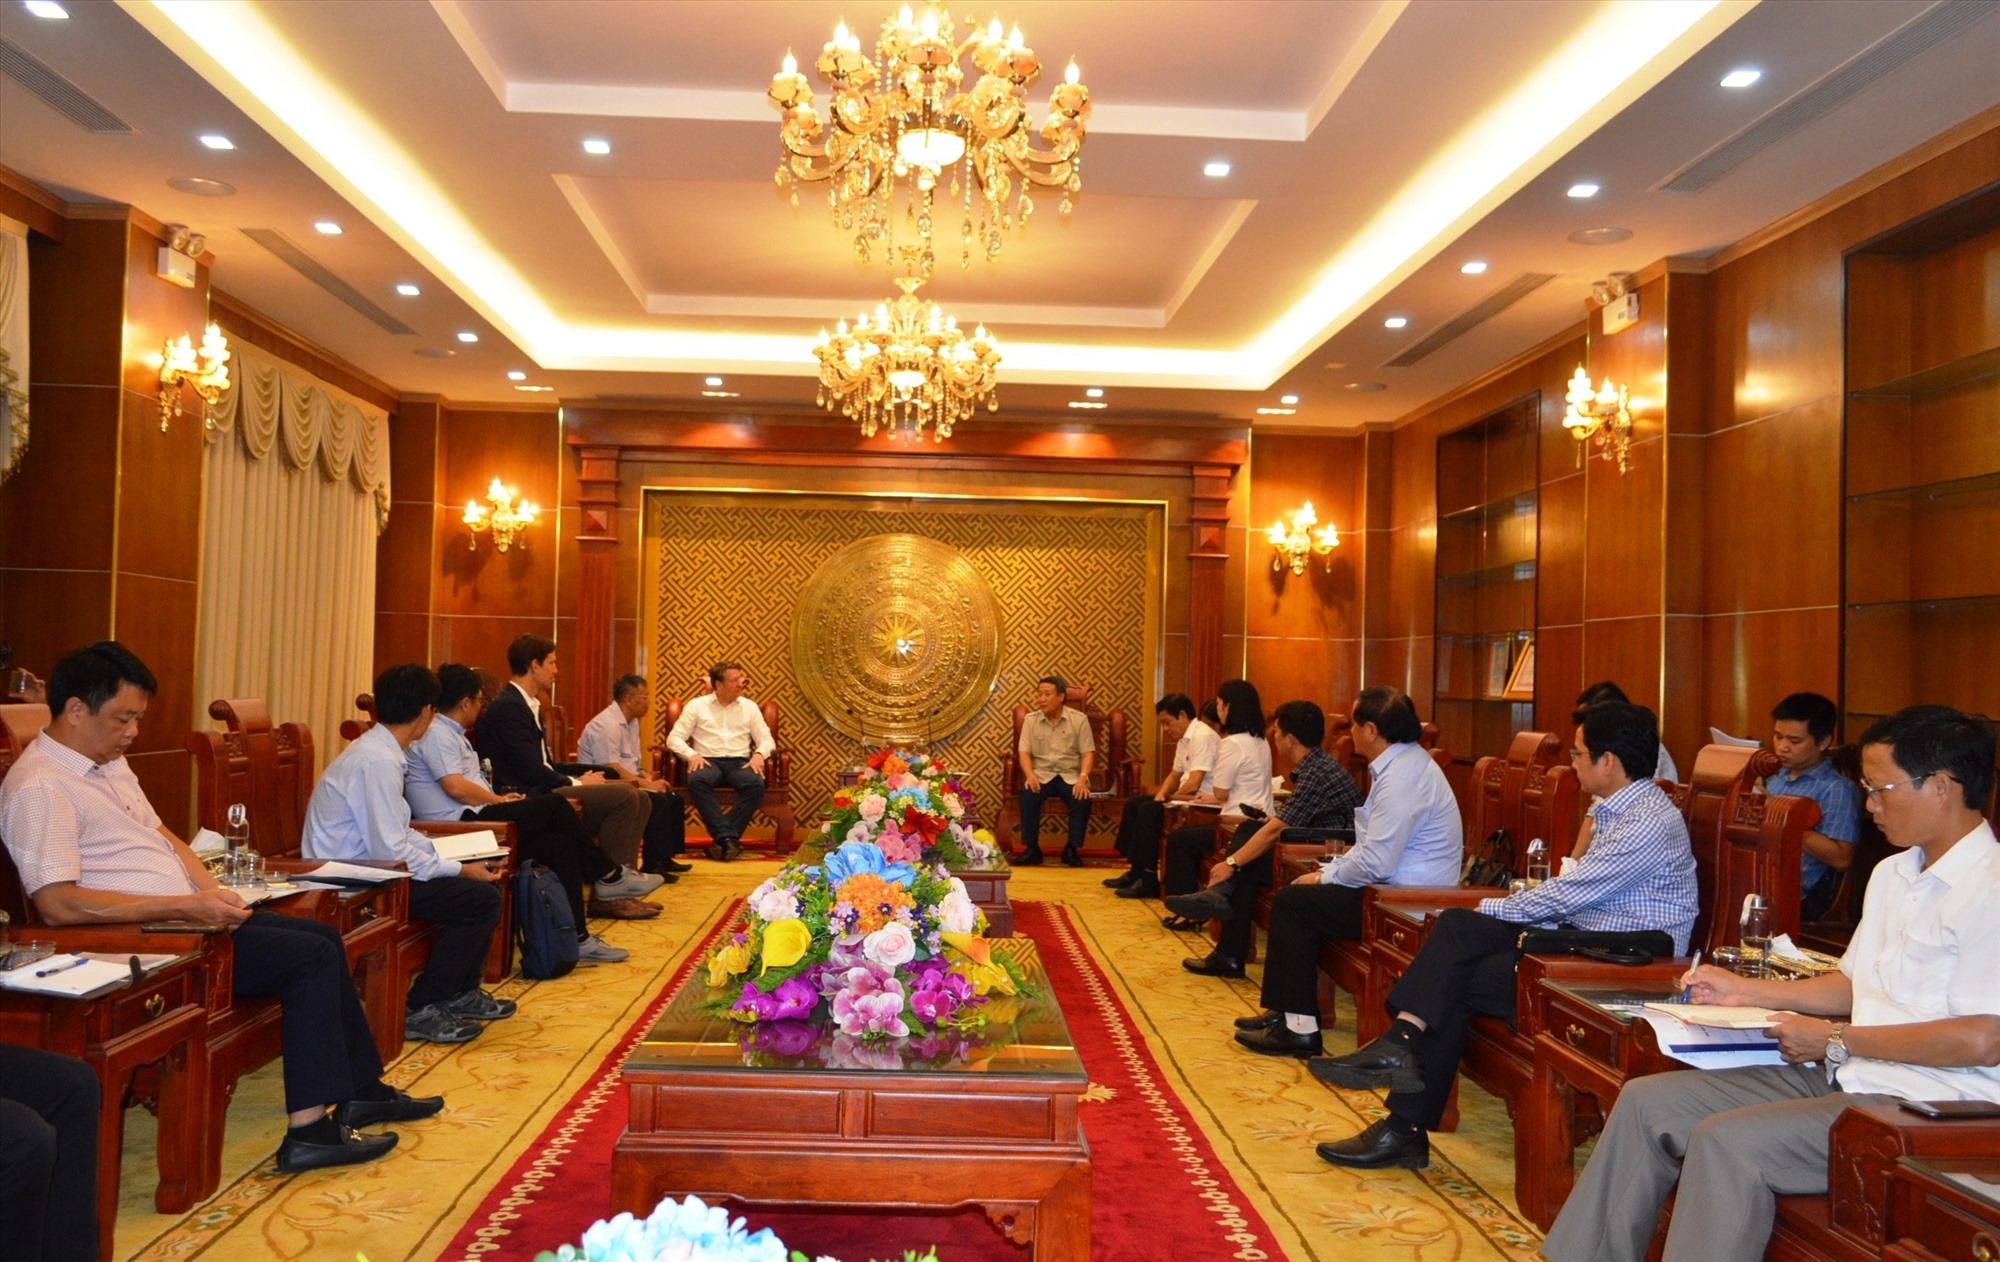 Phó Chủ tịch Thường trực UBND tỉnh Hà Sỹ Đồng làm việc với Công ty cổ phần Tư vấn xây dựng Điện 2 và các đối tác - Ảnh: Đ.V